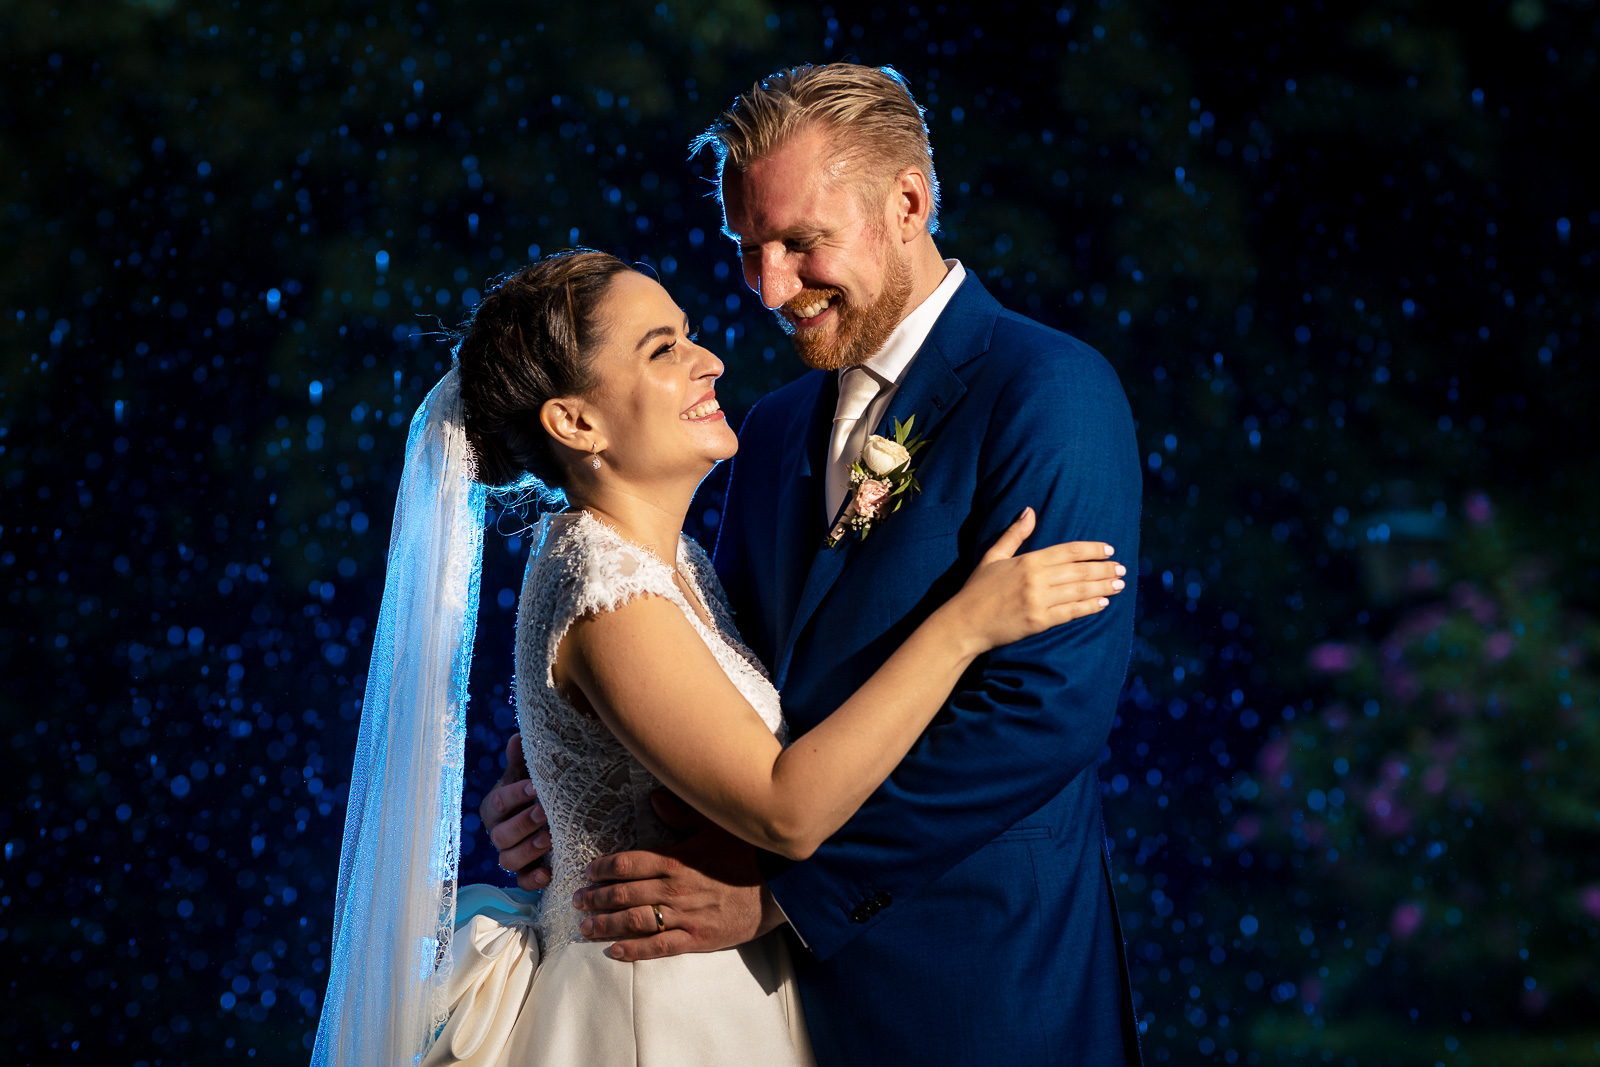 Regen tijdens de fotoshoot met bruidspaar door trouwfotograaf Den Haag